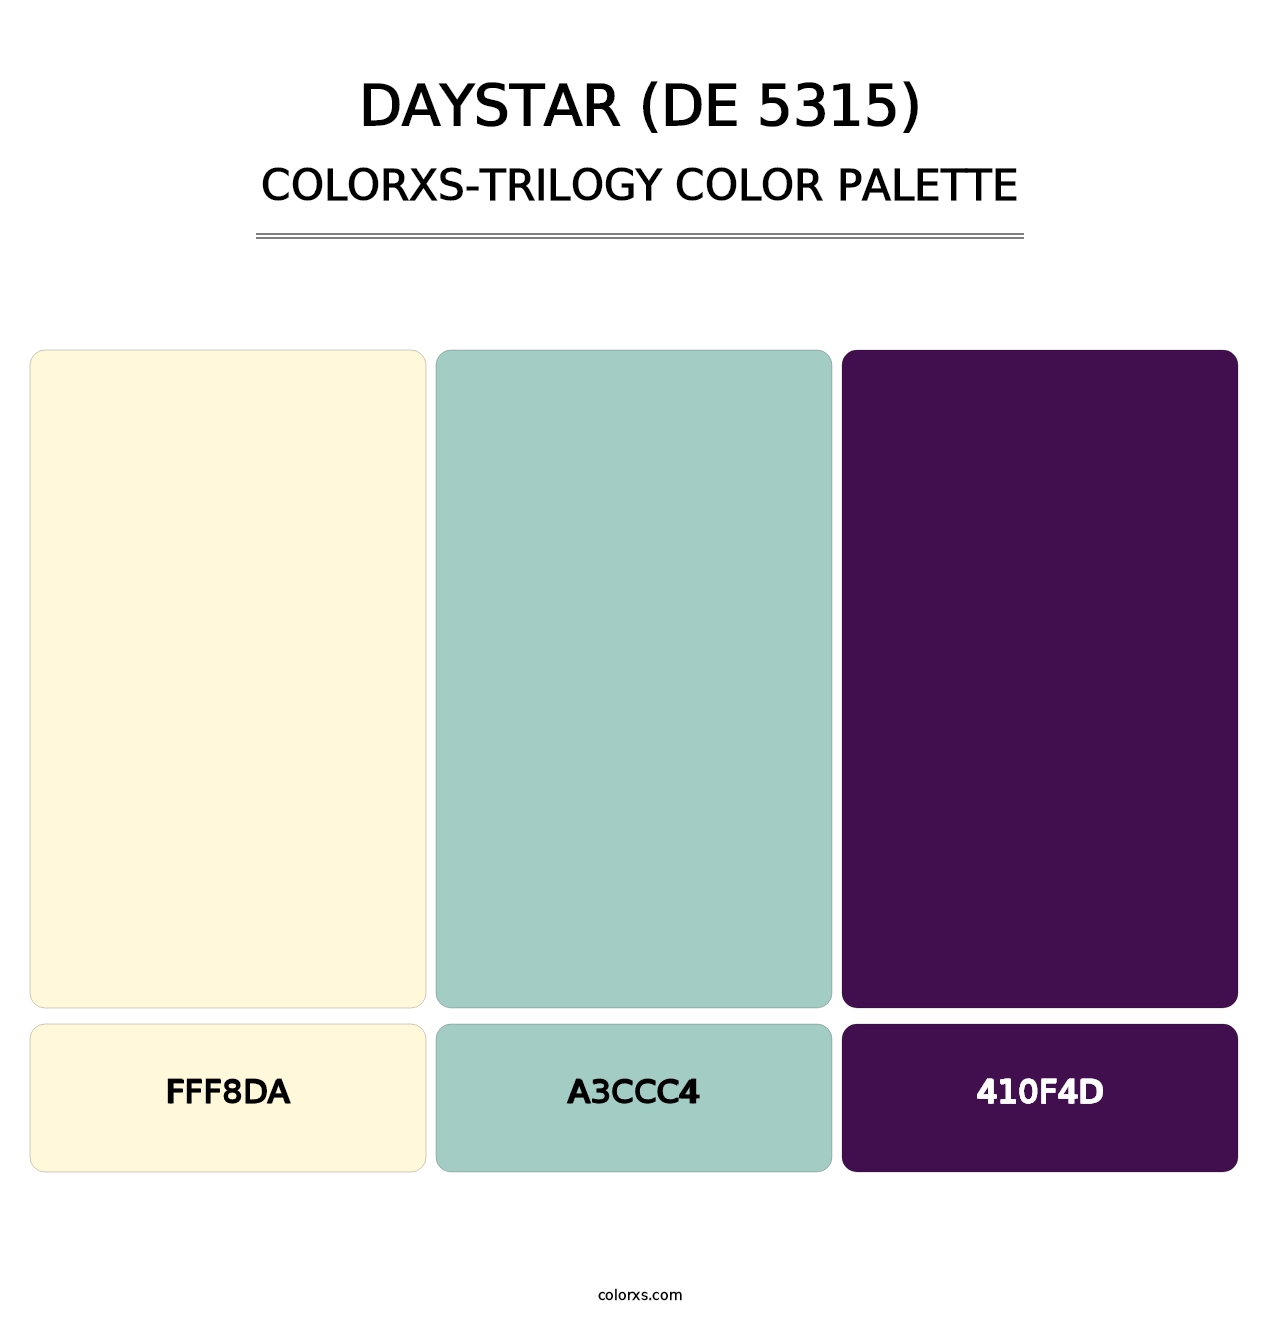 Daystar (DE 5315) - Colorxs Trilogy Palette